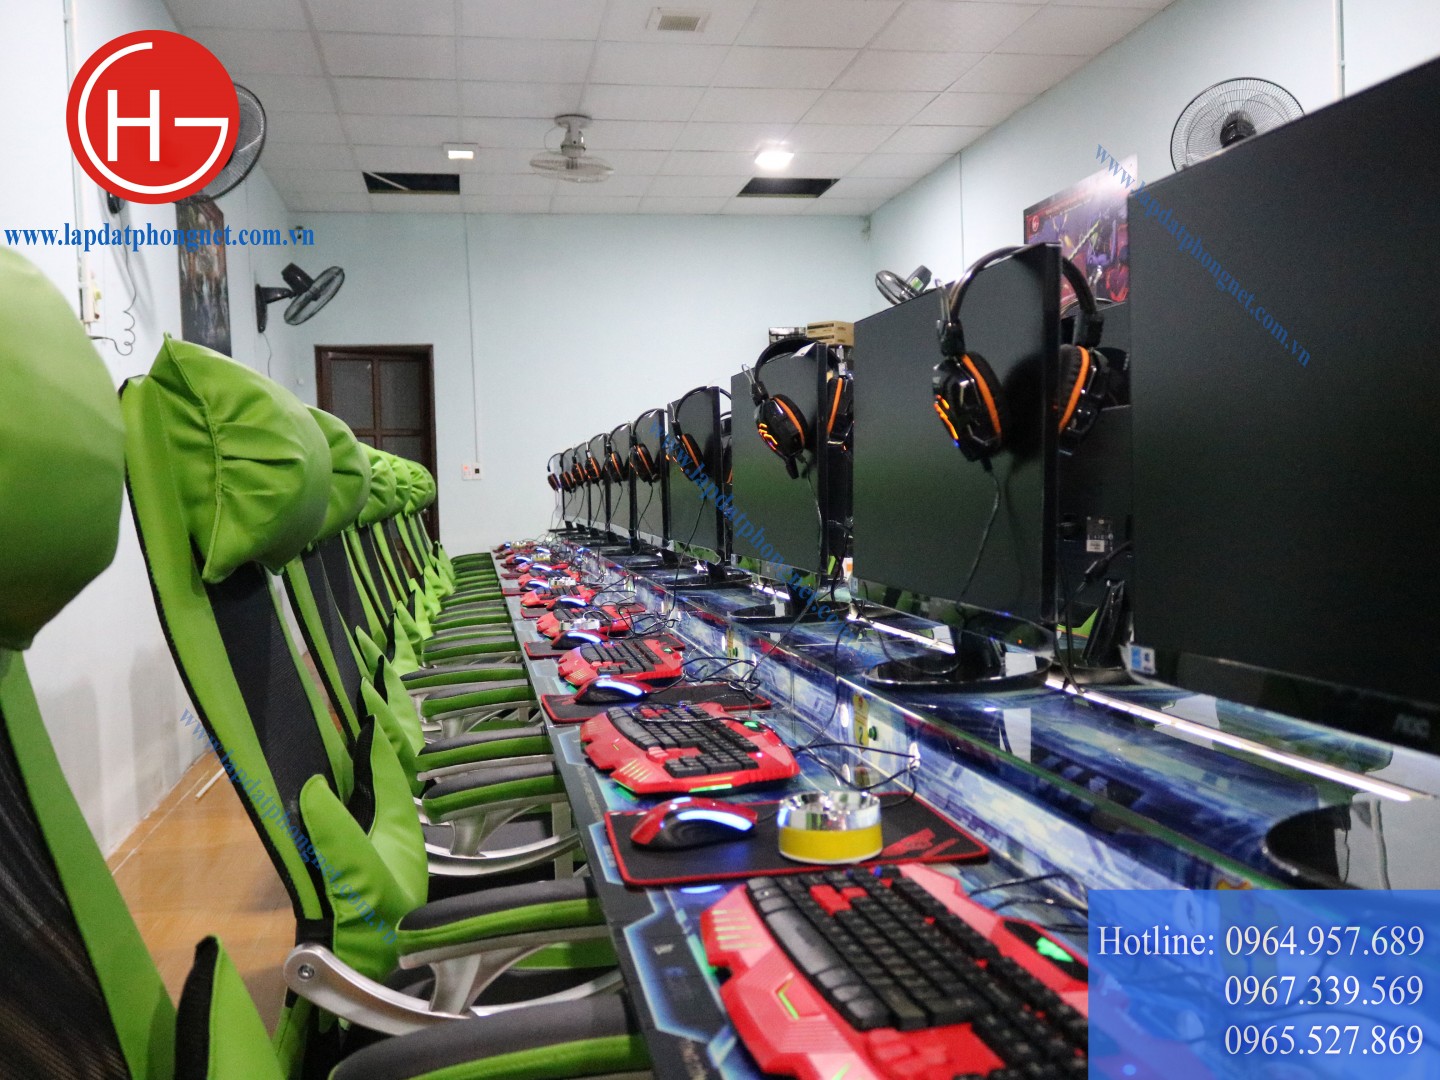 Lắp đặt phòng game trọn gói cho anh Nguyện tại Hiệp Hòa, Bắc Giang